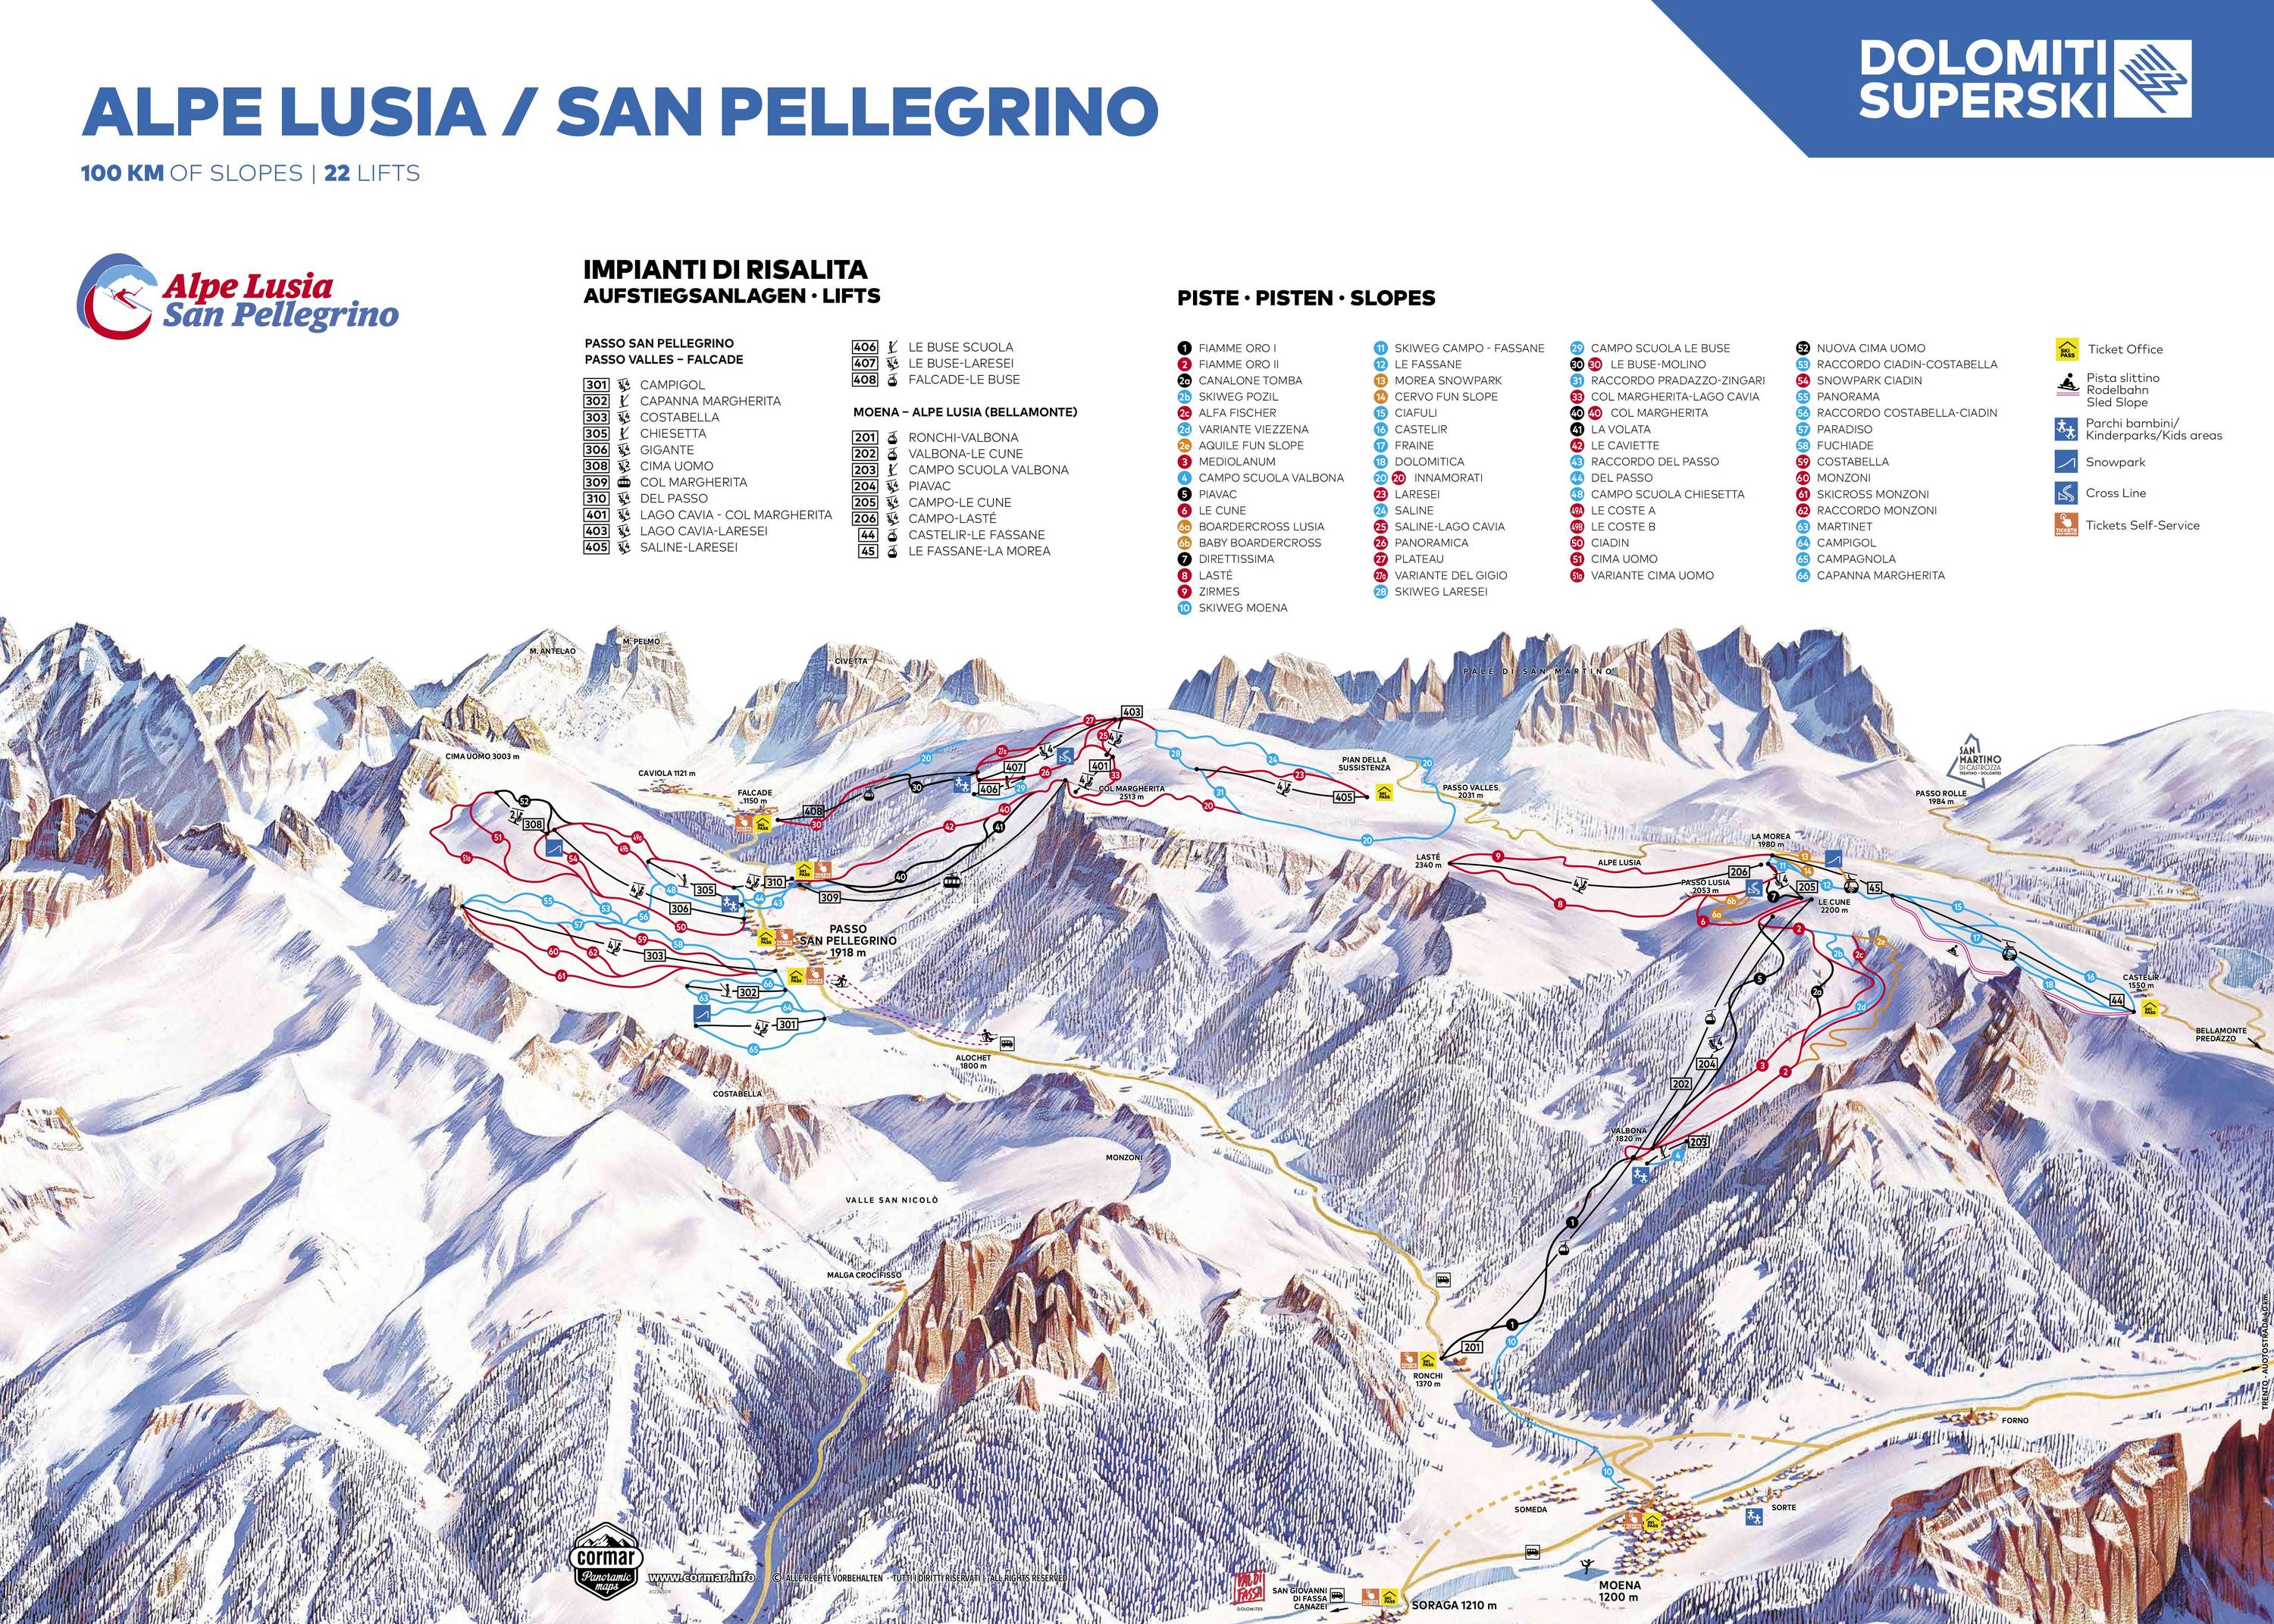 Alpe Lusia/San Pellegrino